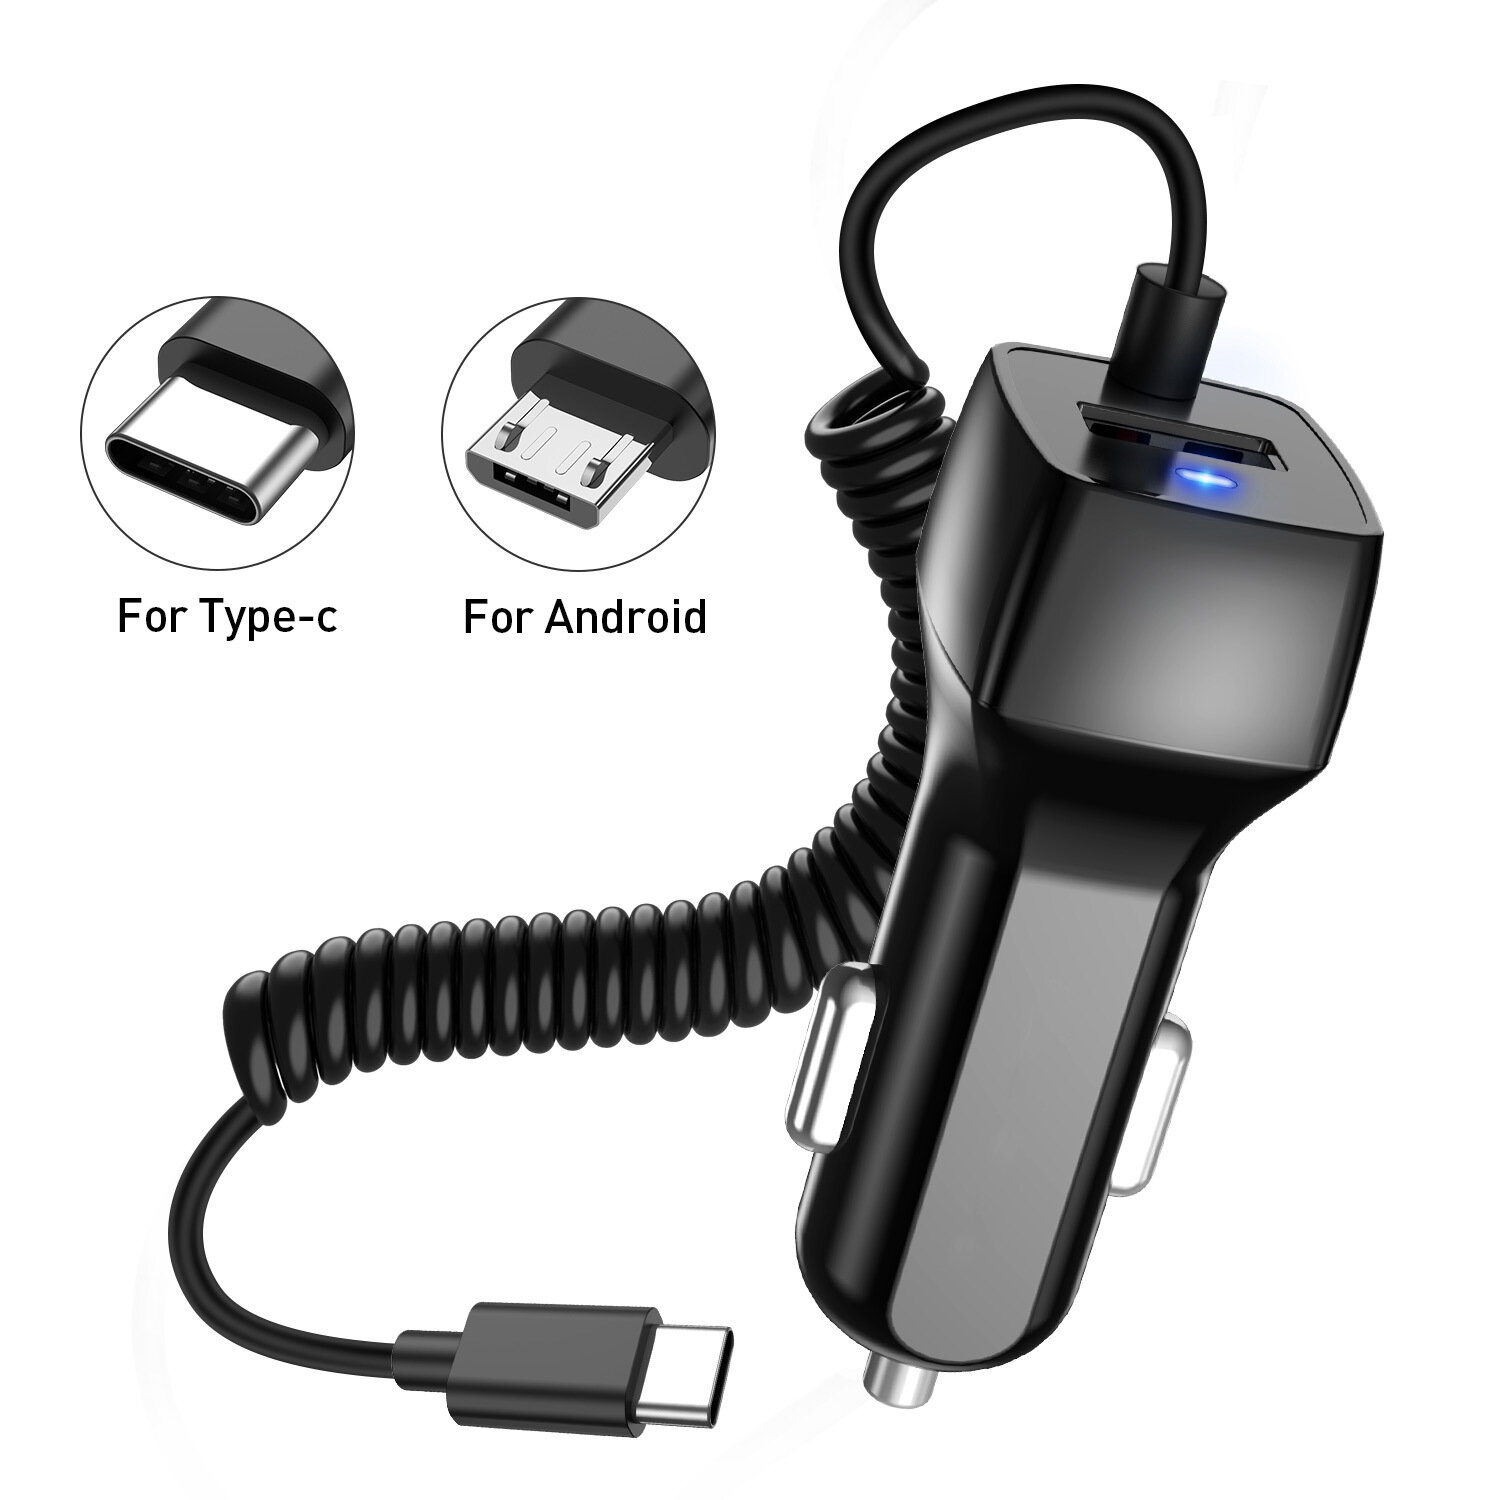 

USLION Быстрая зарядка автомобильного зарядного устройства 12V-24V 5V/1A с кабелем USB TYPE-C и подсветкой для iPhone